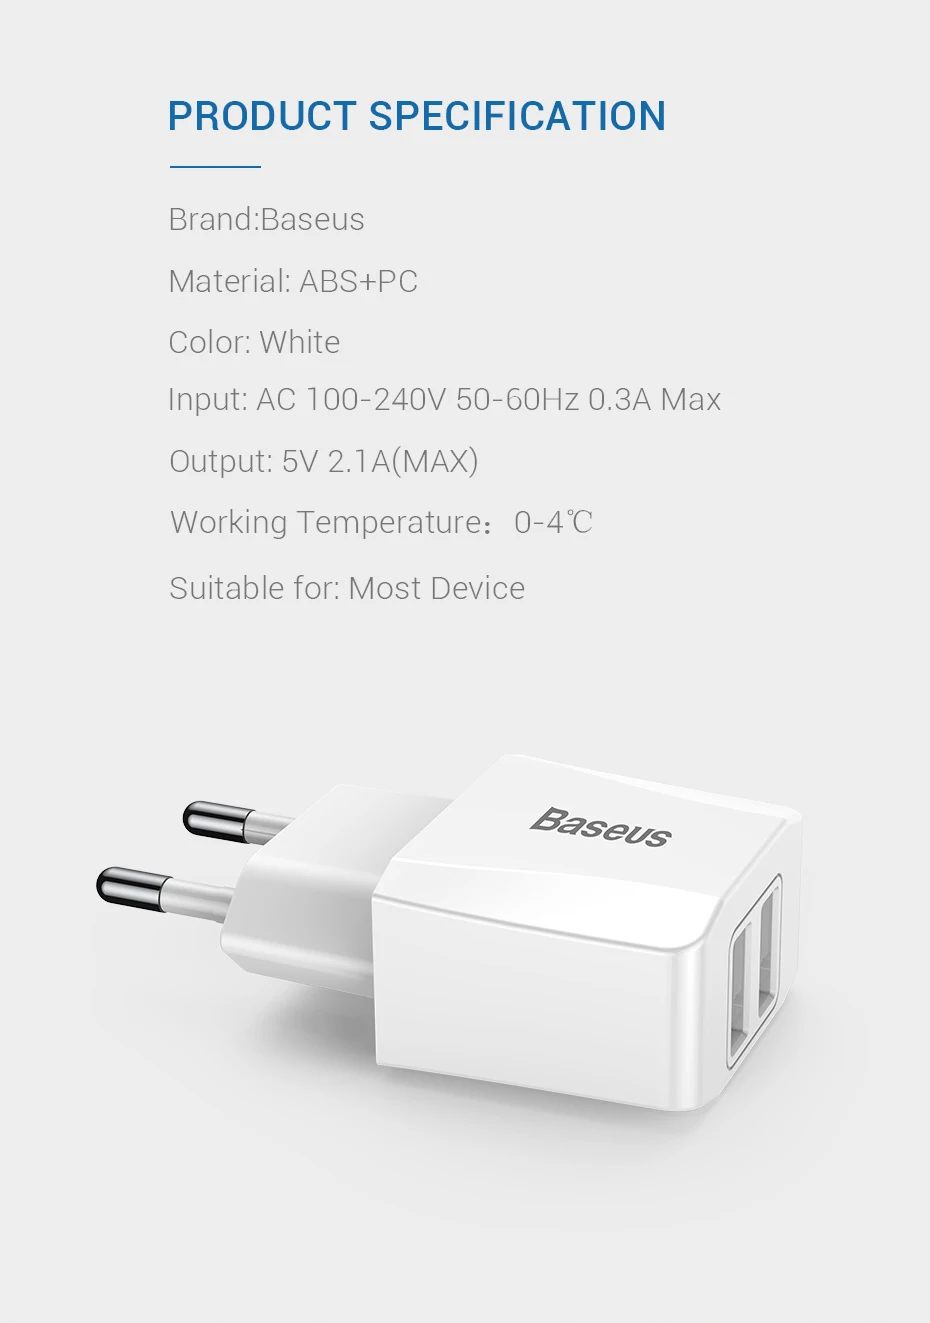 Baseus портативное двойное USB зарядное устройство 5 В 2.1A для iPhone X 8 7 6 зарядное устройство с европейской вилкой быстрое настенное зарядное устройство для samsung S8 Note 8 Xiaomi Mi 8